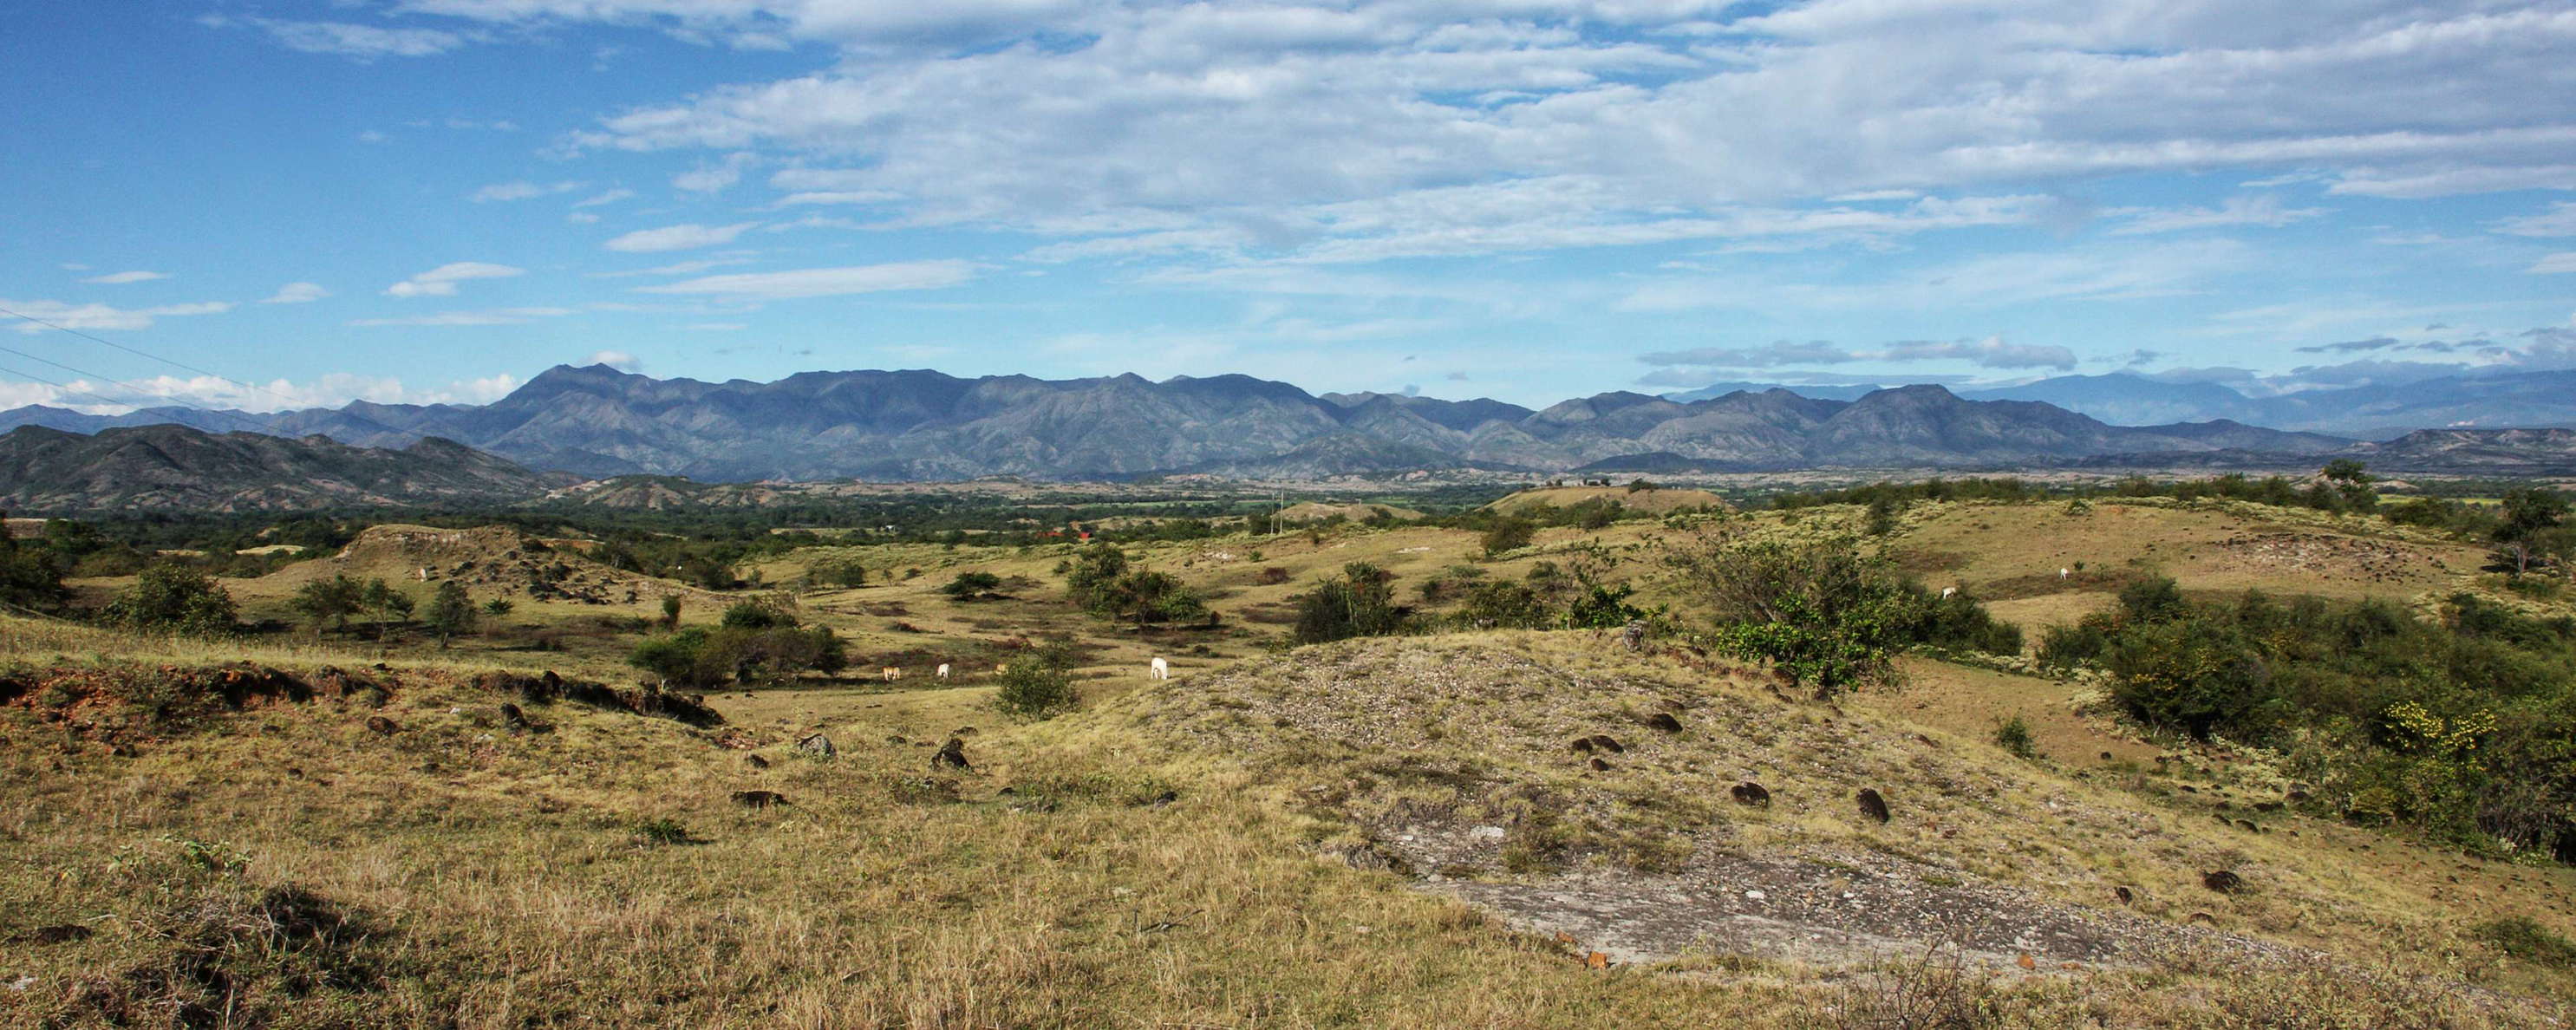 Río Magdalena Valley  |  Dry savanna